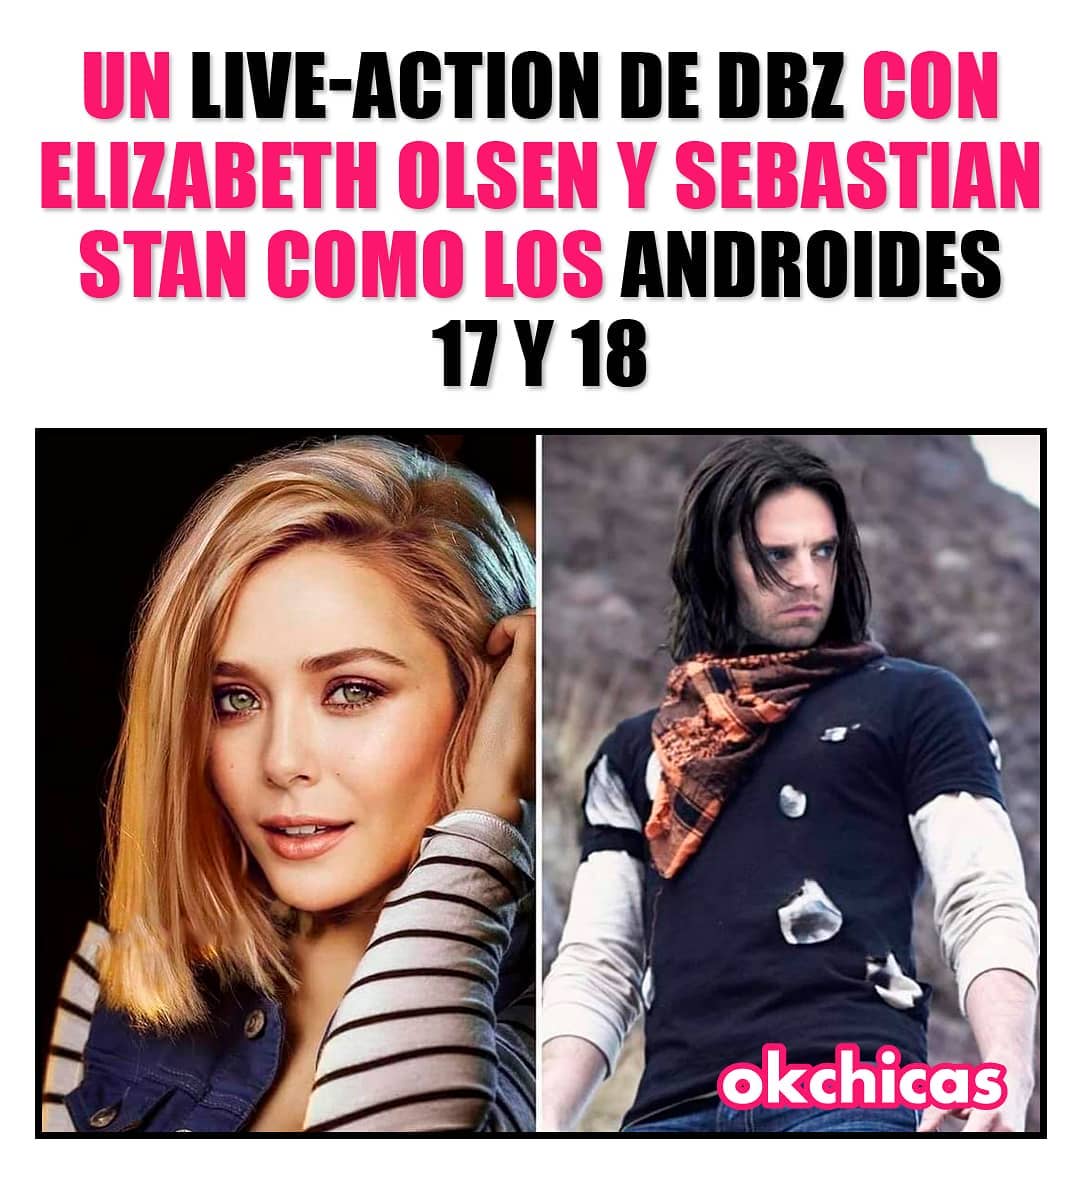 Un live-action de dbz con Elizabeth y Sebastián stan como los androides 17 y 18.